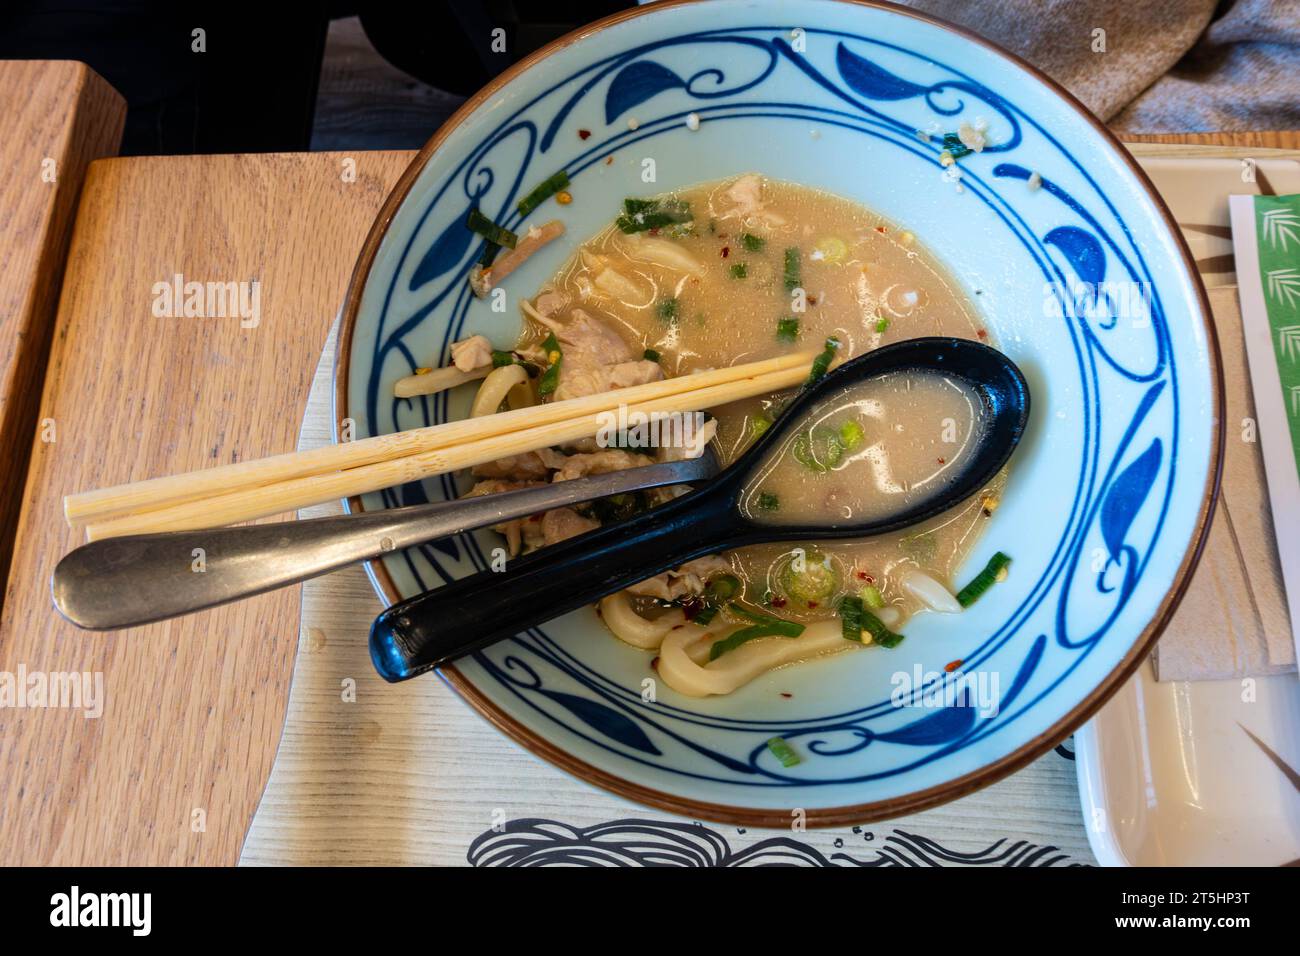 Una ciotola con zuppa e spaghetti rimasti dopo che una persona ha finito di mangiare un pasto in un ristorante Foto Stock